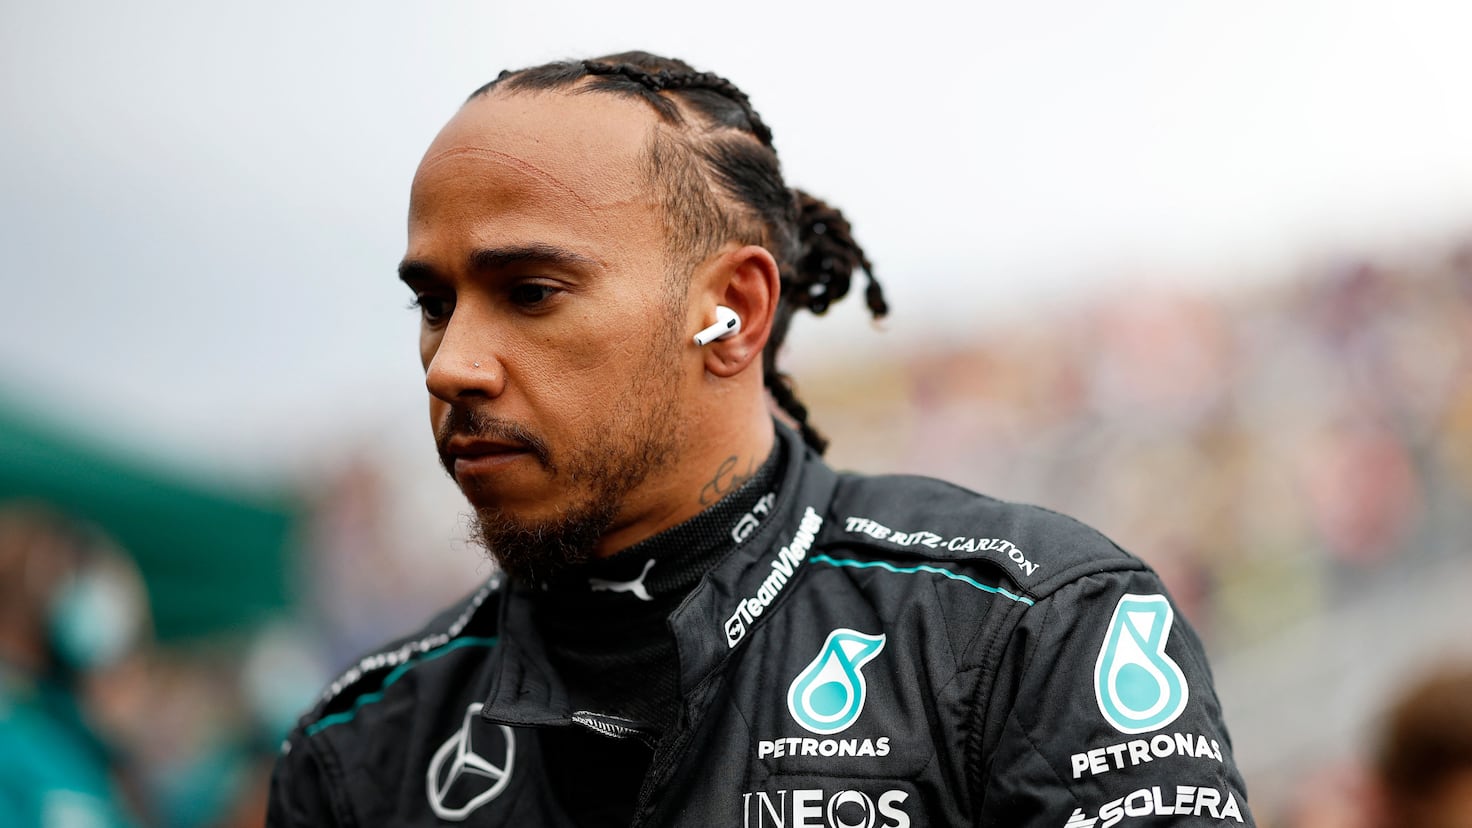 Dura autocrítica de Hamilton: “Una de mis peores carreras”